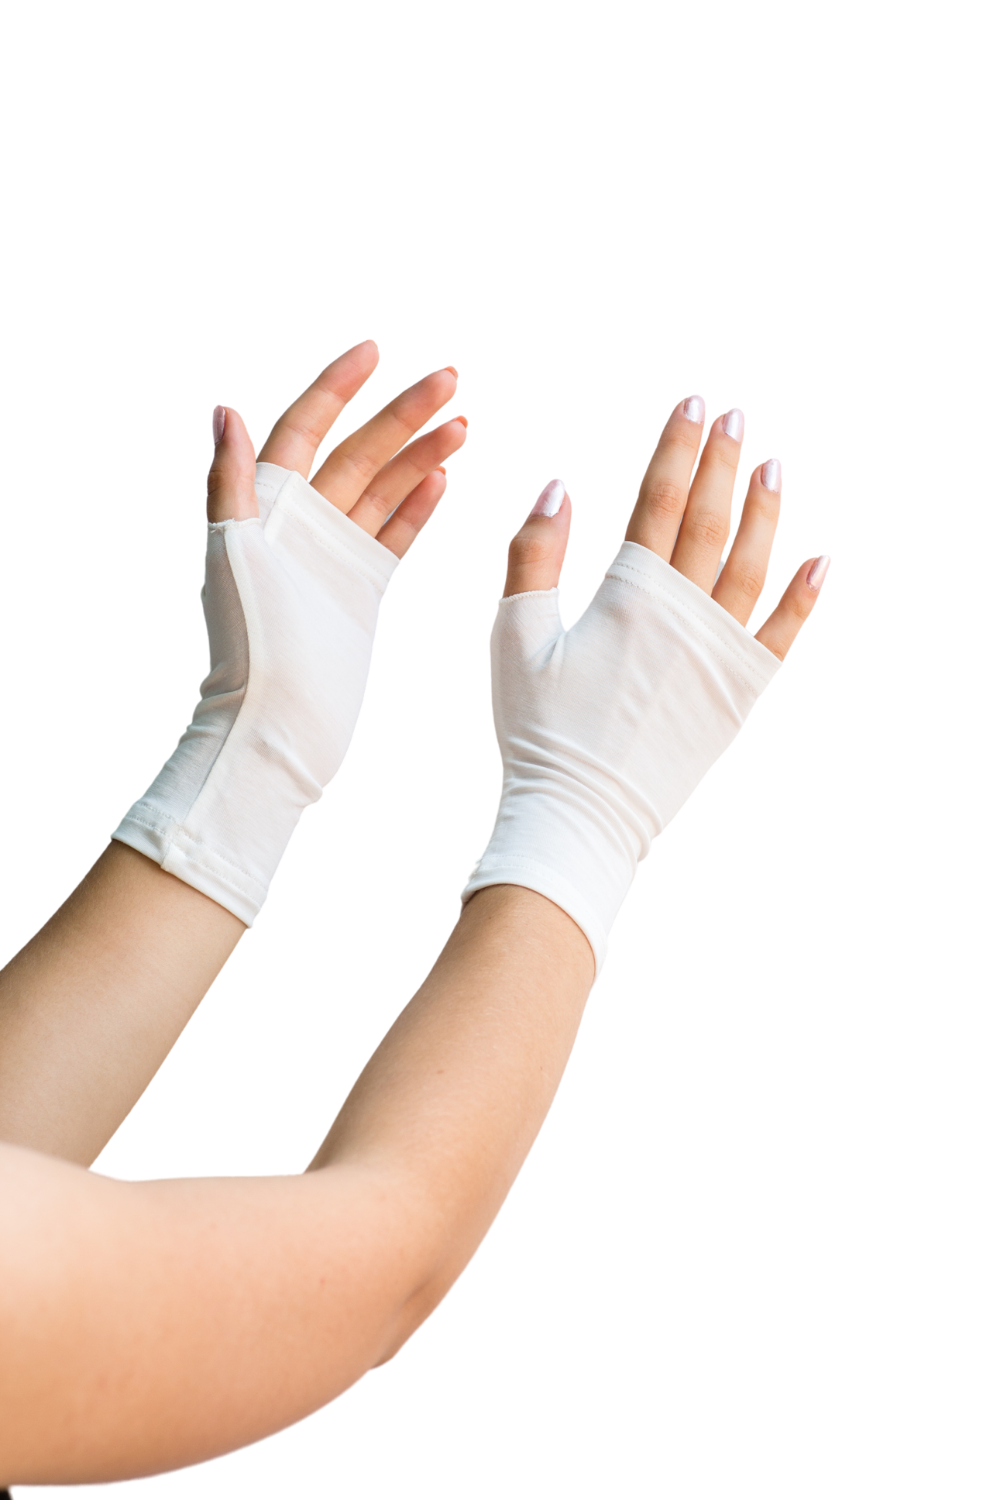 Adult fingerless gloves against white background